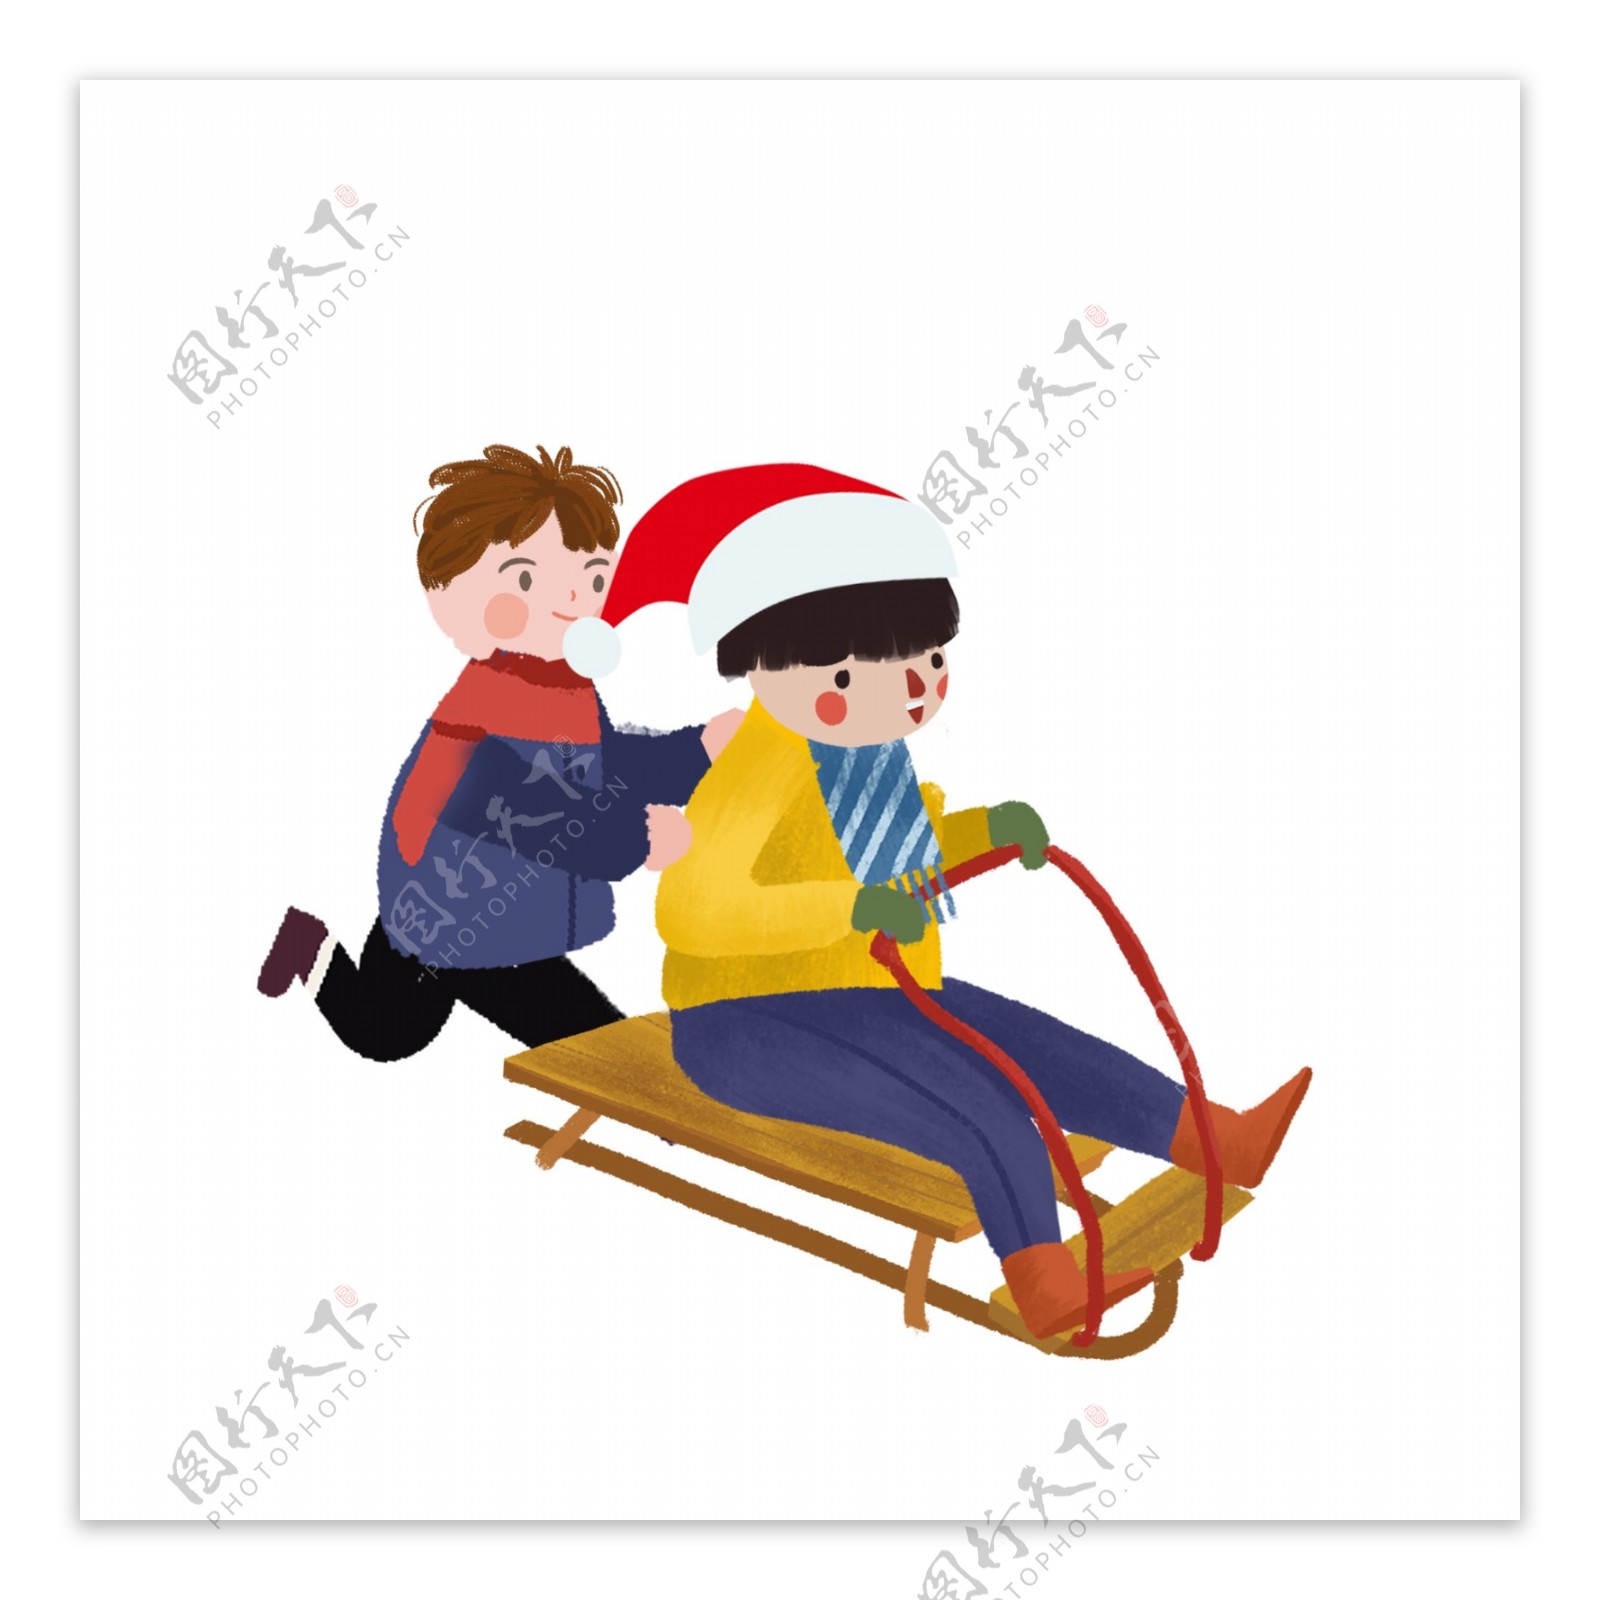 圣诞节开心滑雪的兄弟俩人物设计